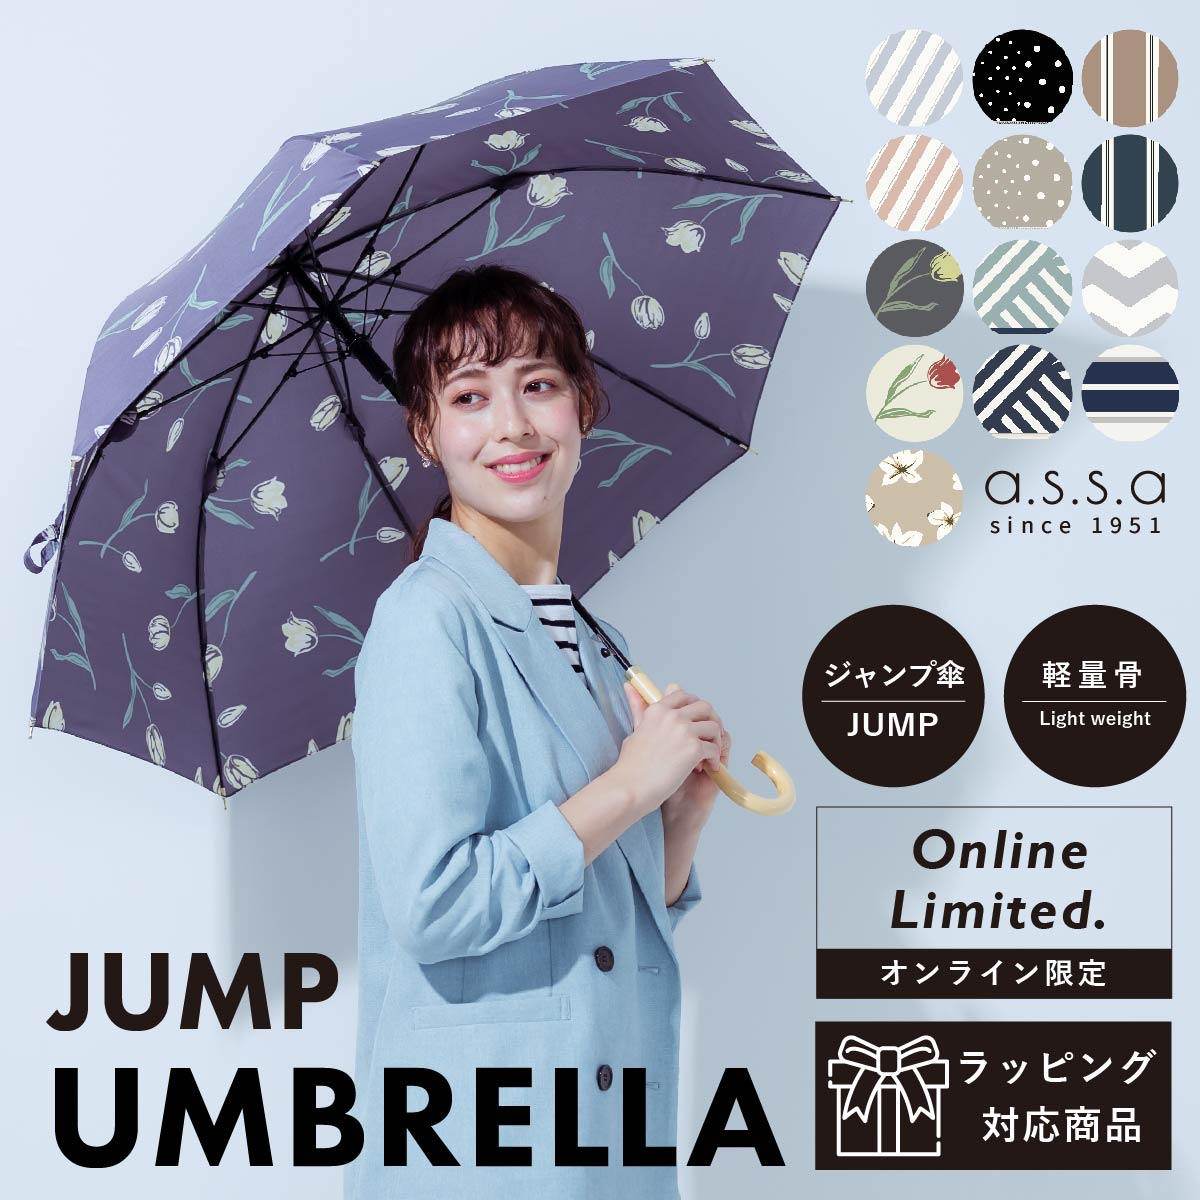 レディース傘 荷物の多い女性に 大きくて軽量な長傘のおすすめランキング キテミヨ Kitemiyo